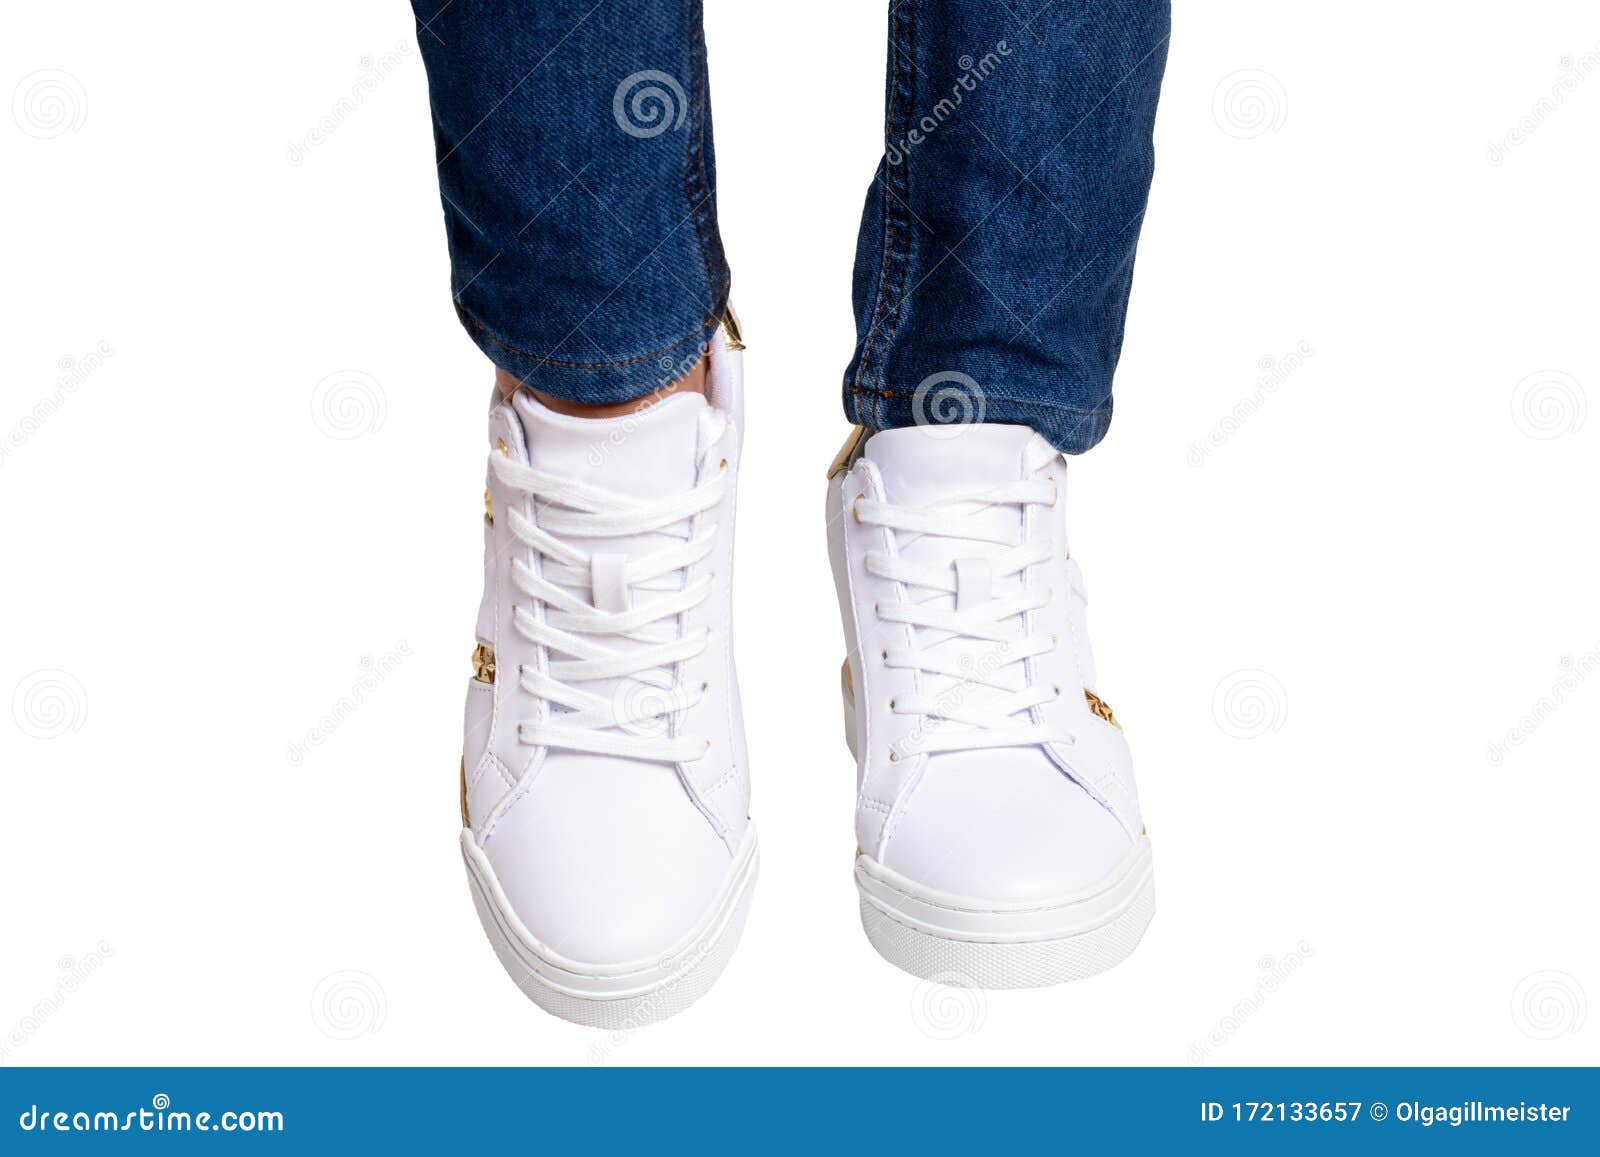 Piernas Femeninas En Jeans Y Zapatillas Piernas De Mujer Con Pantalones De Denim Azules Usando Zapatillas Modernas Calzad Imagen de archivo - Imagen de material, forma: 172133657